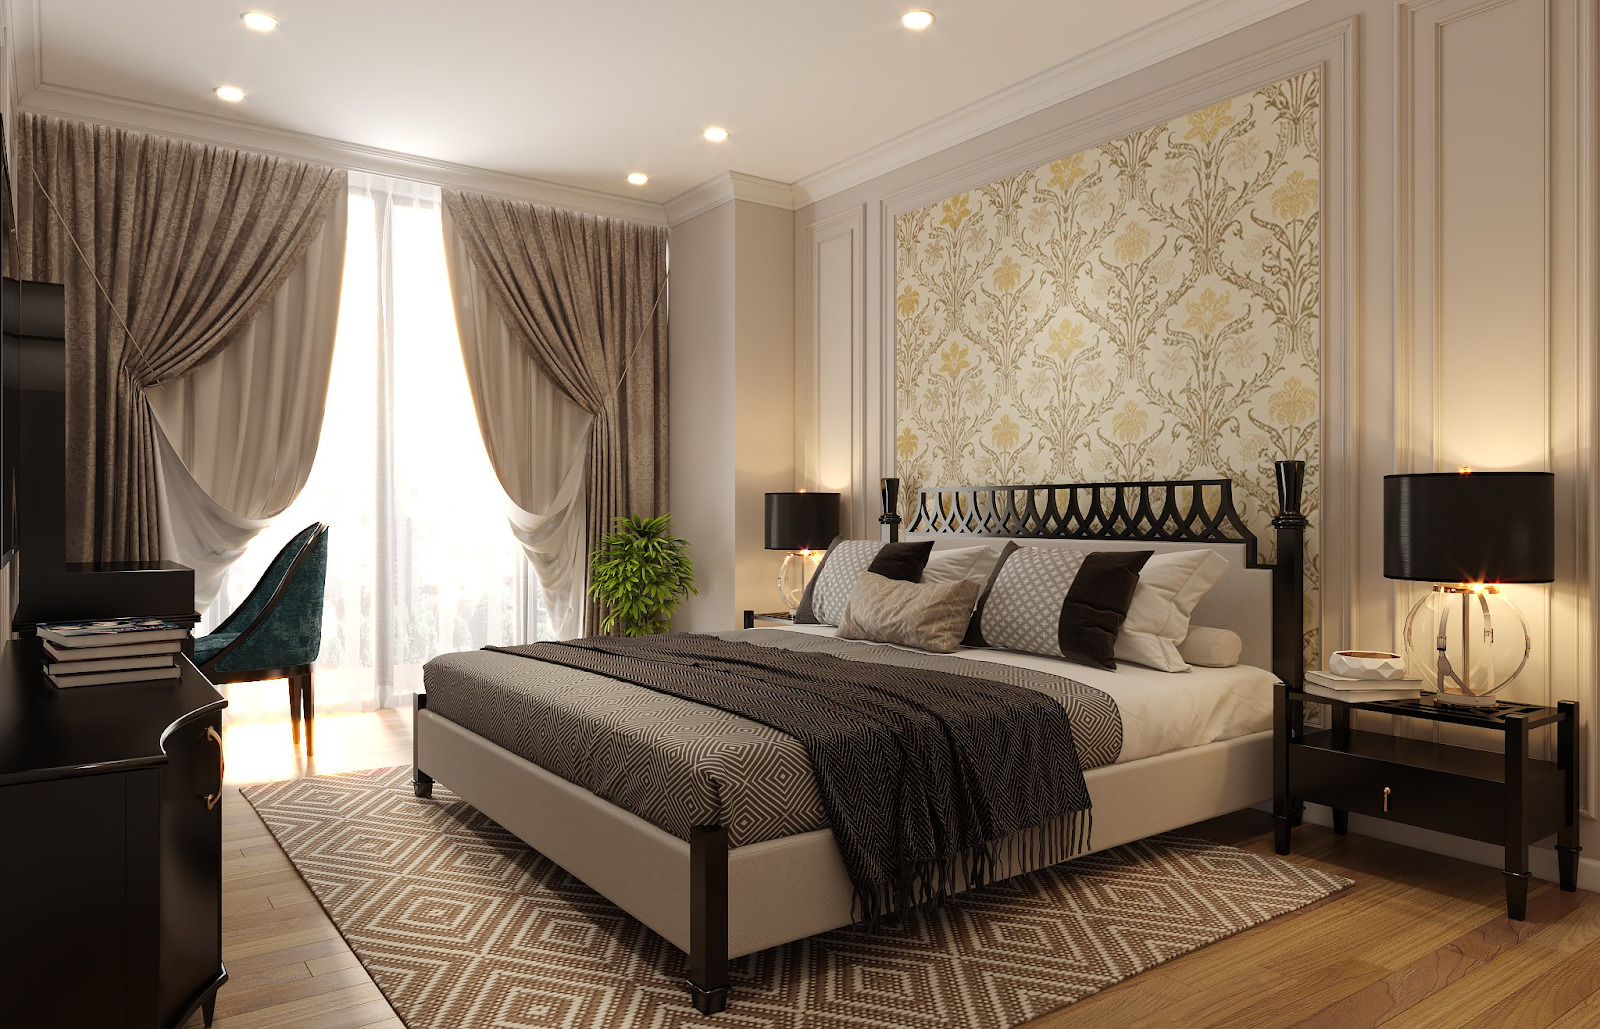 Mẫu thiết kế phòng ngủ phong cách Art Deco